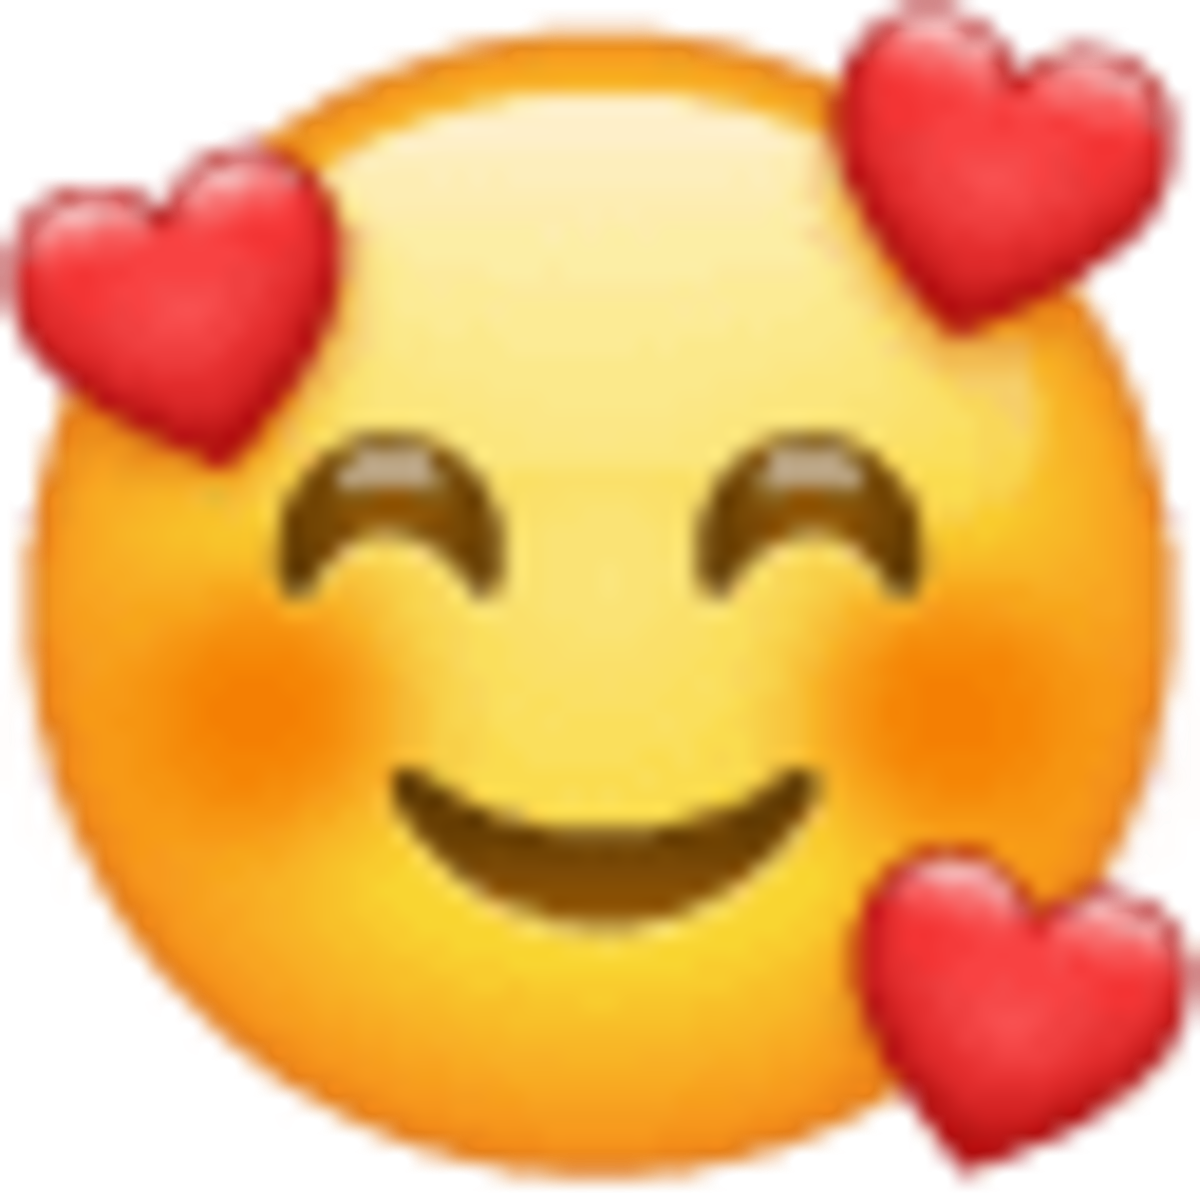 emoji U1f970, cara sonriente rodeada de corazones